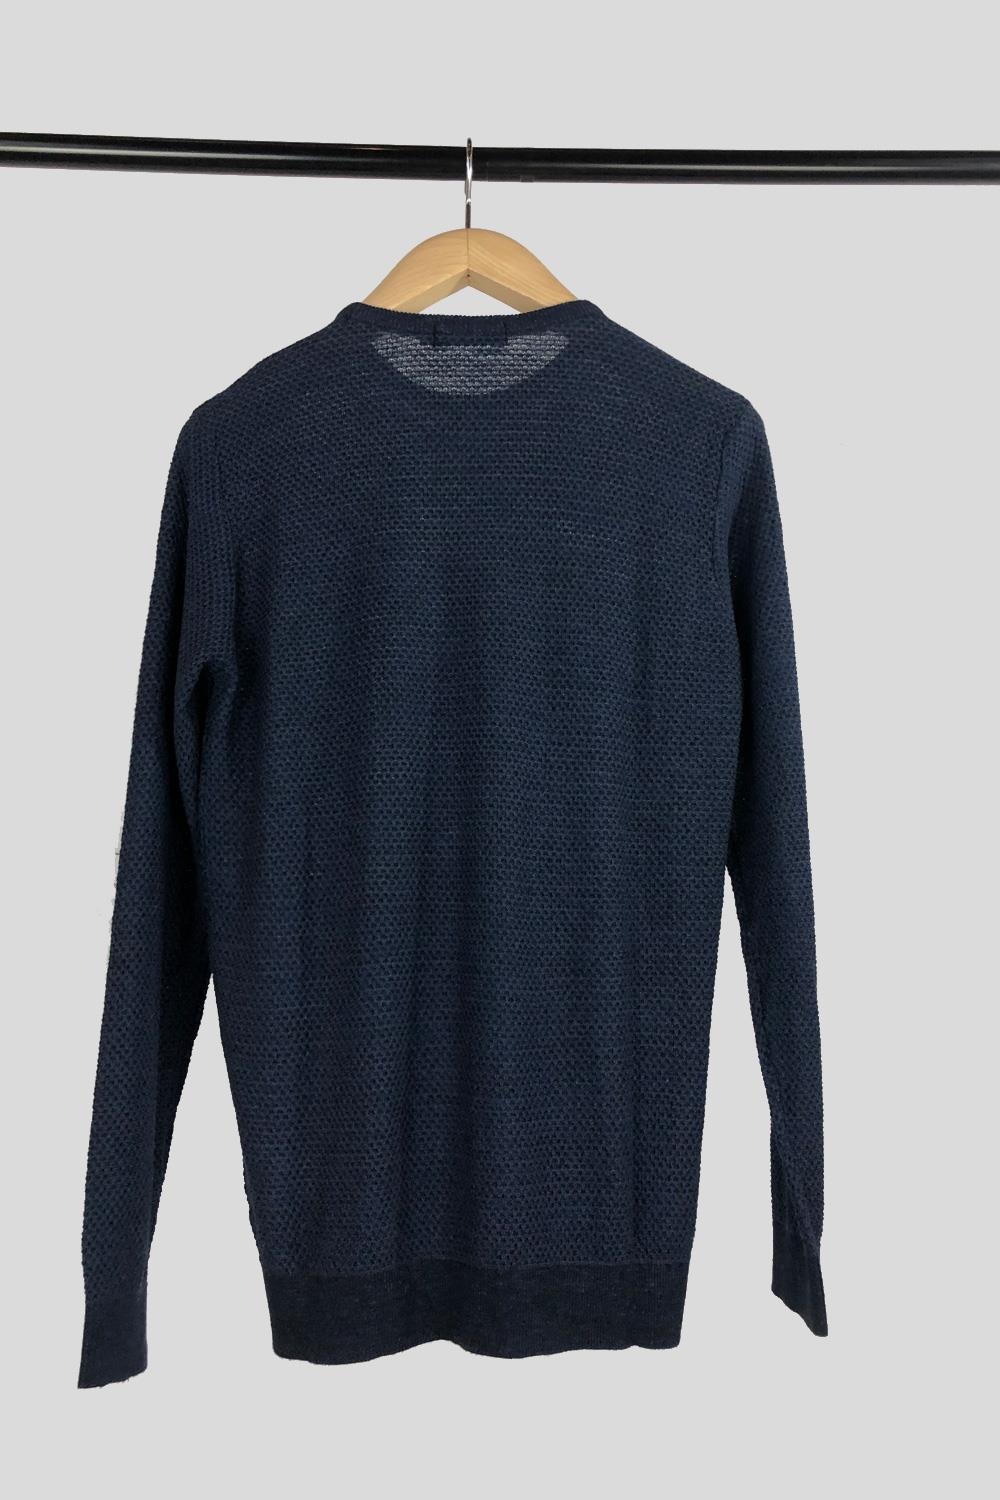 Jersey azul cuello redondo en algodón | 1625HJCR02/026